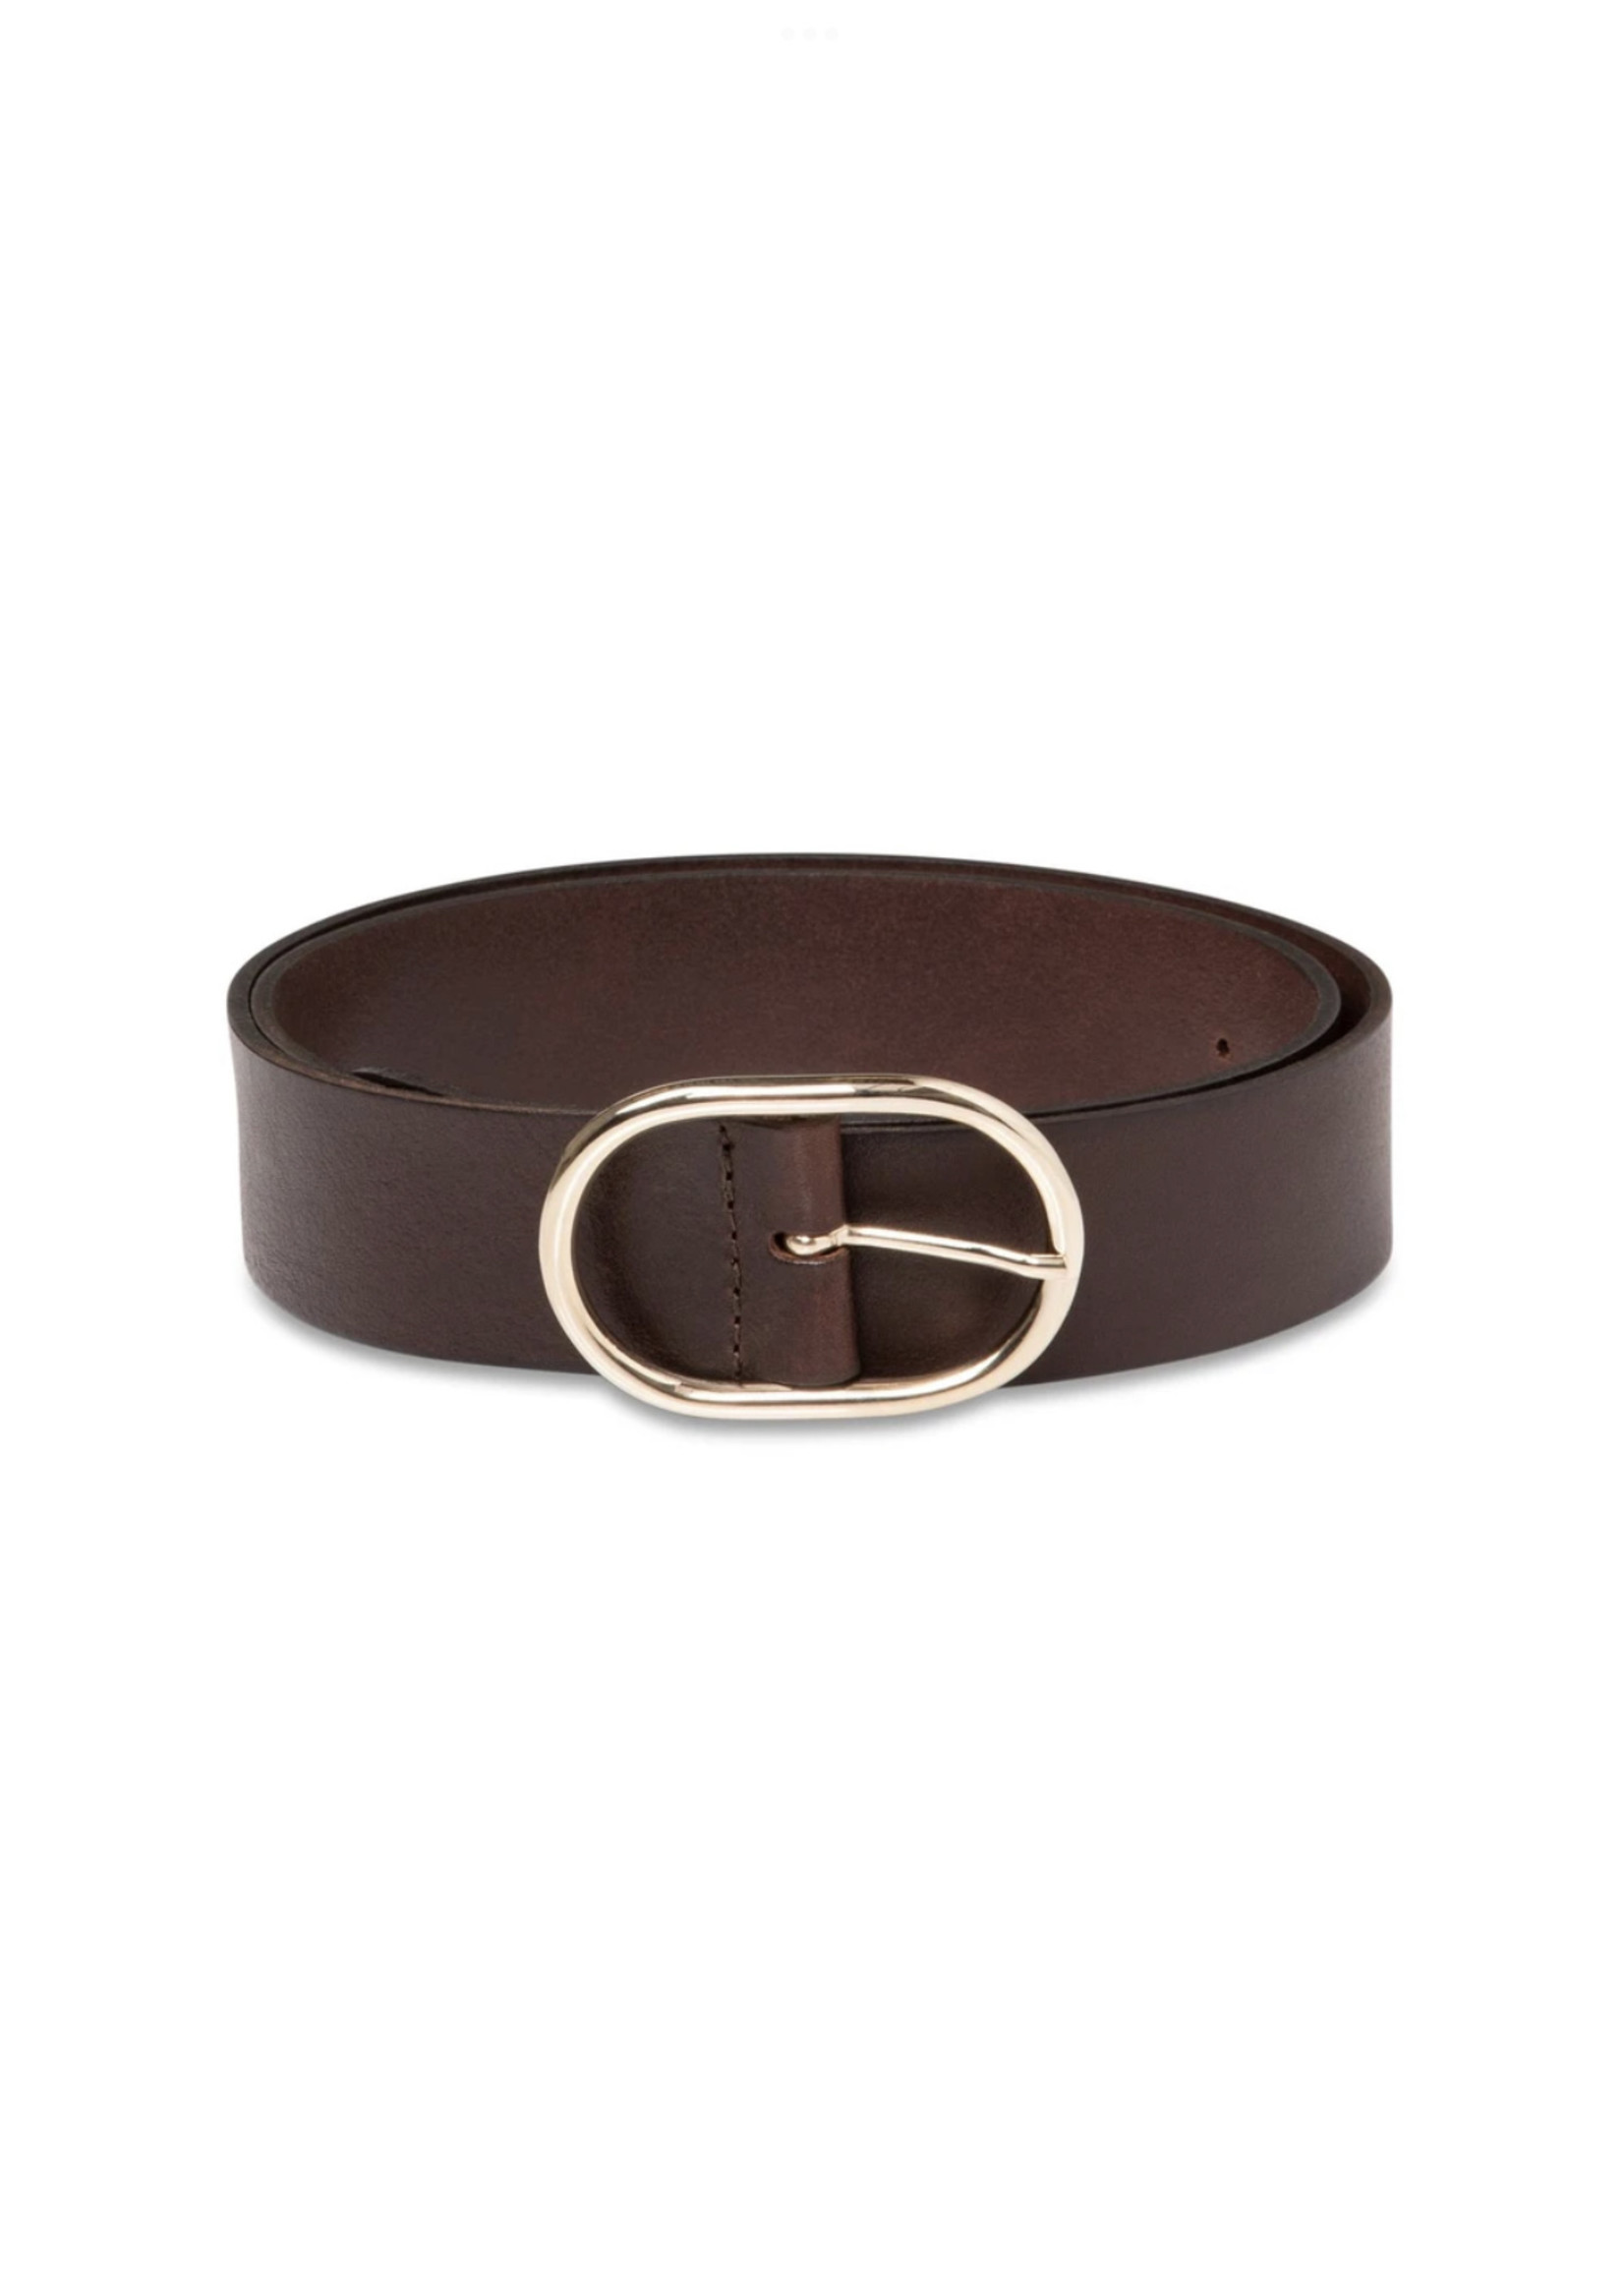 YAYA Yaya - Leather belt with Oval Buckle